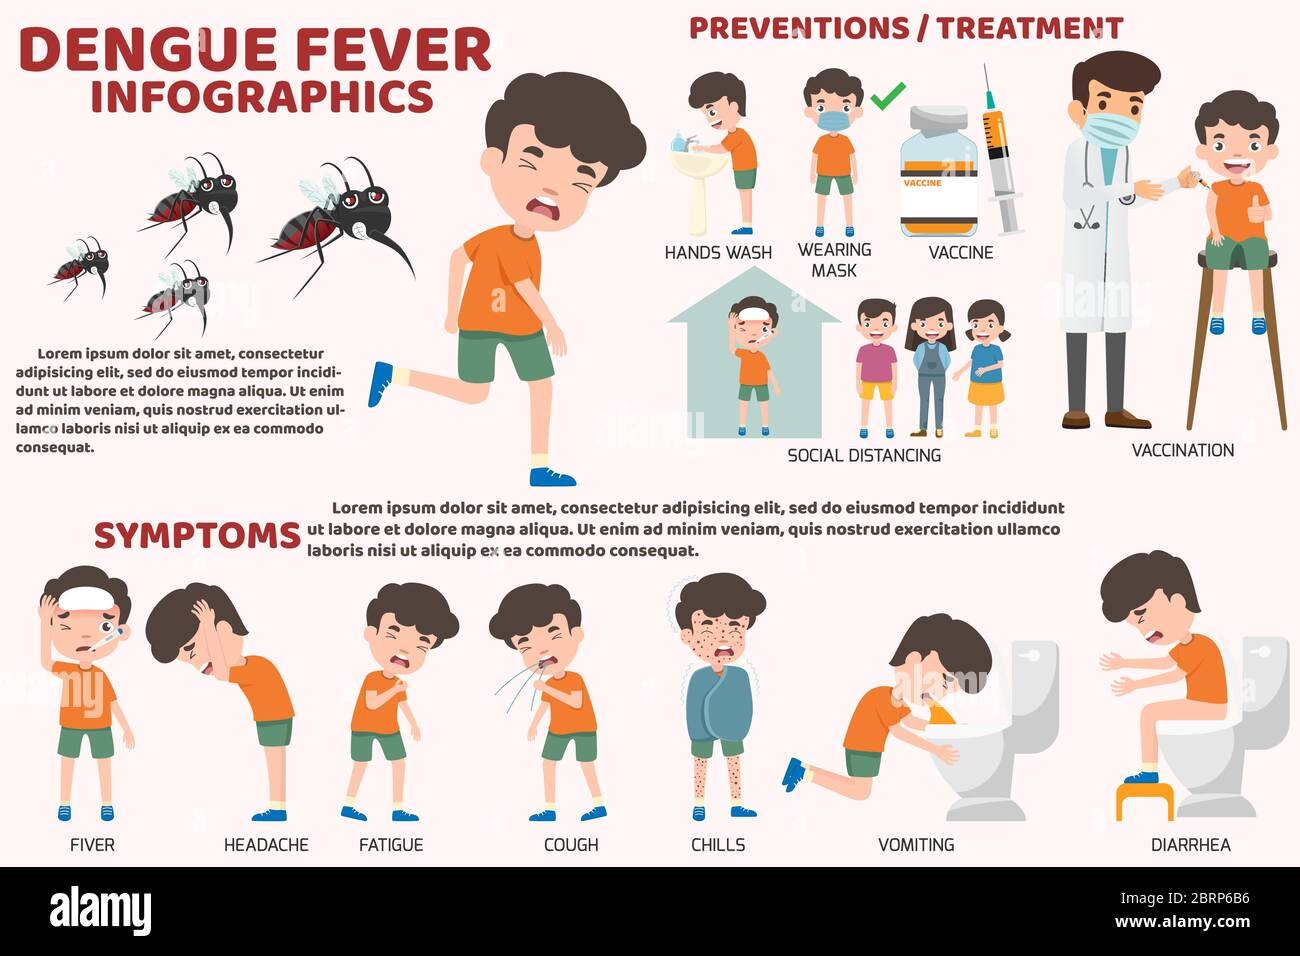 Modello di disegno di dettagli febbre dengue o influenza e sintomi con infografiche prevenzione. Sanità e cartoni animati illustrazione medica vettore. Childre Illustrazione Vettoriale